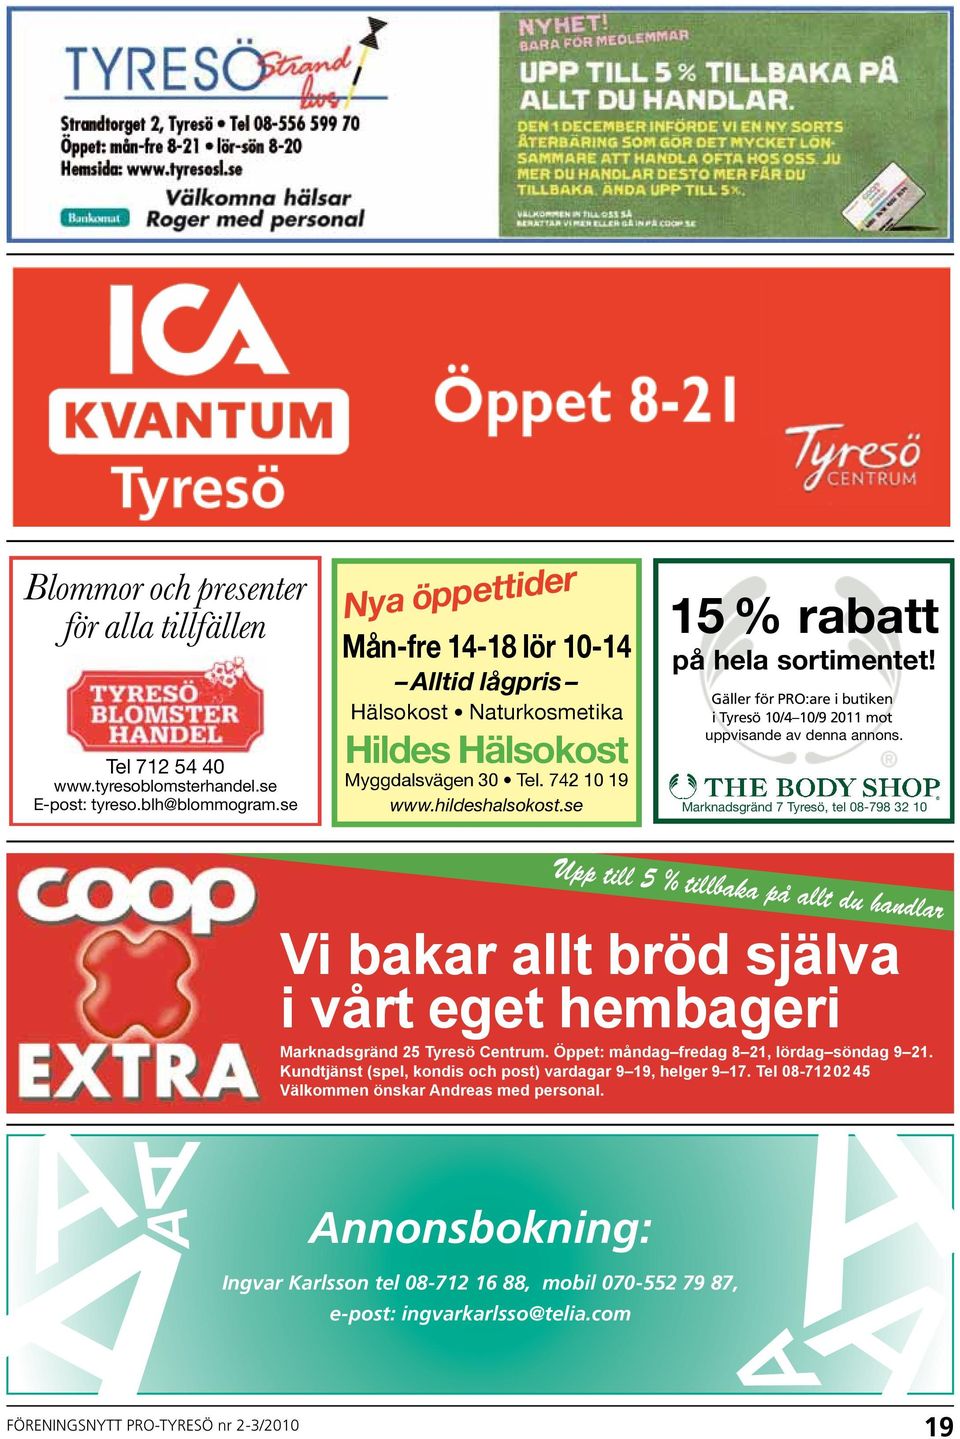 Gäller Gäller för i PRO:are butiken i i Tyresö butiken i Tyresö t.o.m. 10/4 10/9 31/10-04 2011 mot mot uppvisande av denna annons.